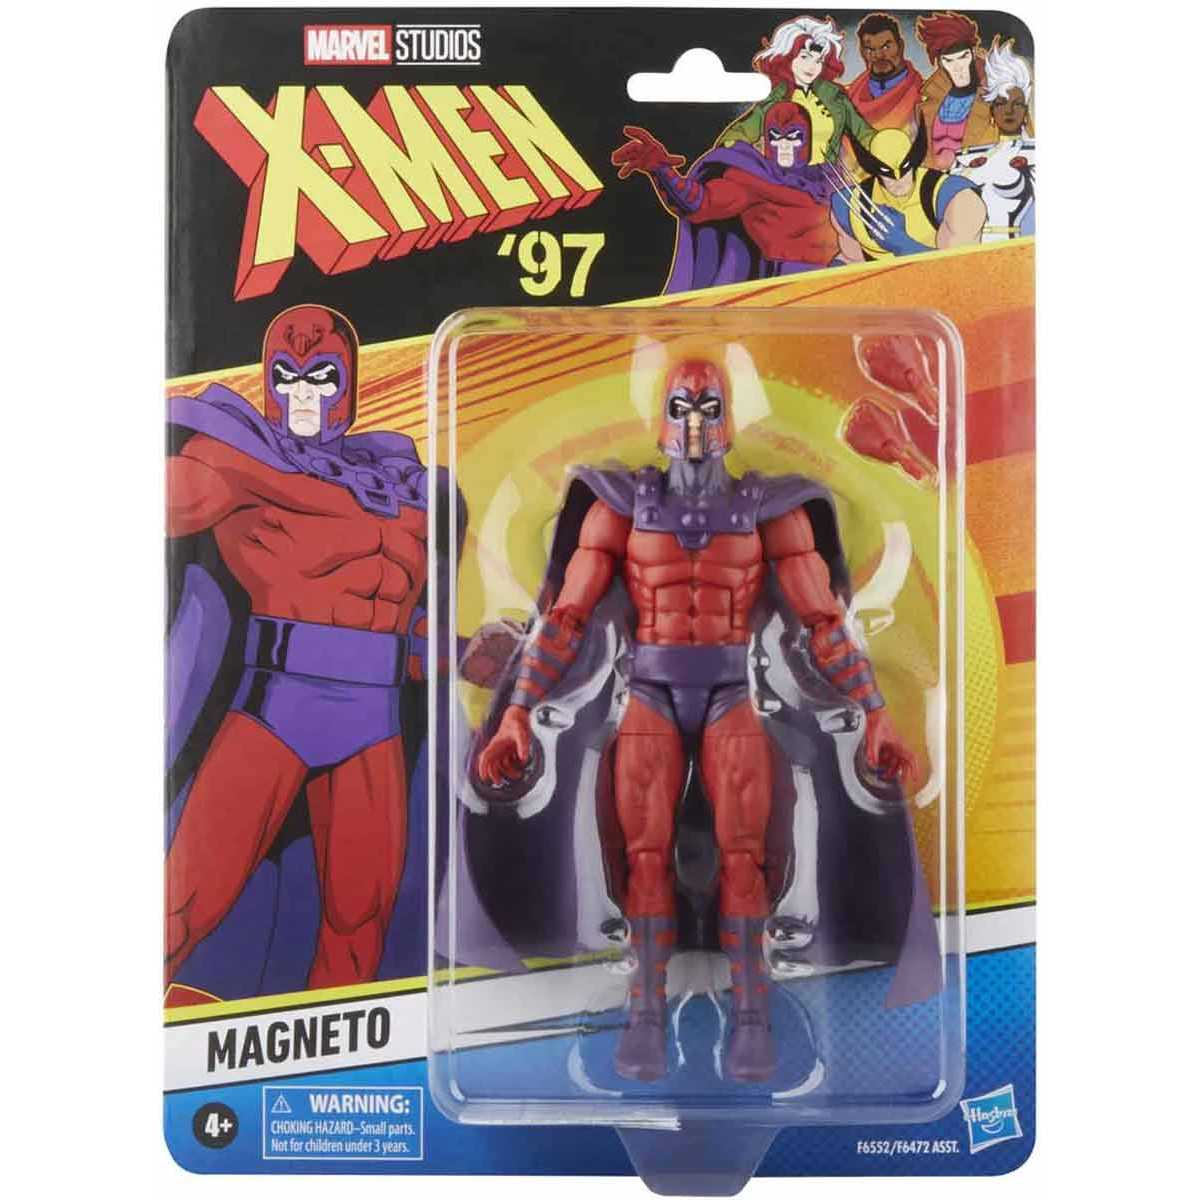 Magneto X-Men'97 Marvel...